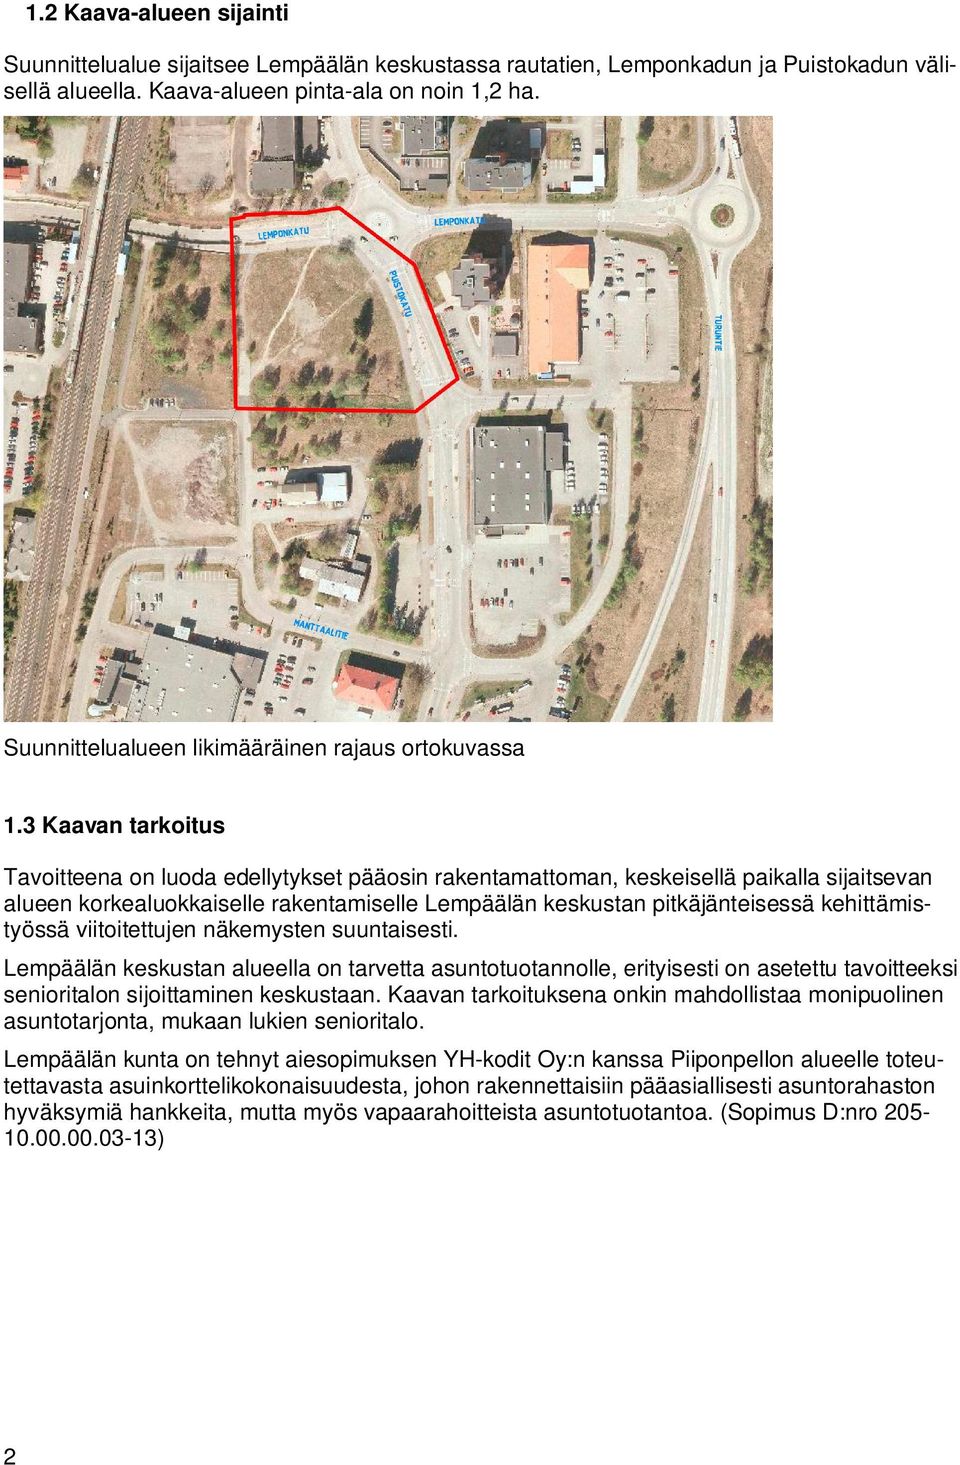 3 Kaavan tarkoitus Tavoitteena on luoda edellytykset pääosin rakentamattoman, keskeisellä paikalla sijaitsevan alueen korkealuokkaiselle rakentamiselle Lempäälän keskustan pitkäjänteisessä